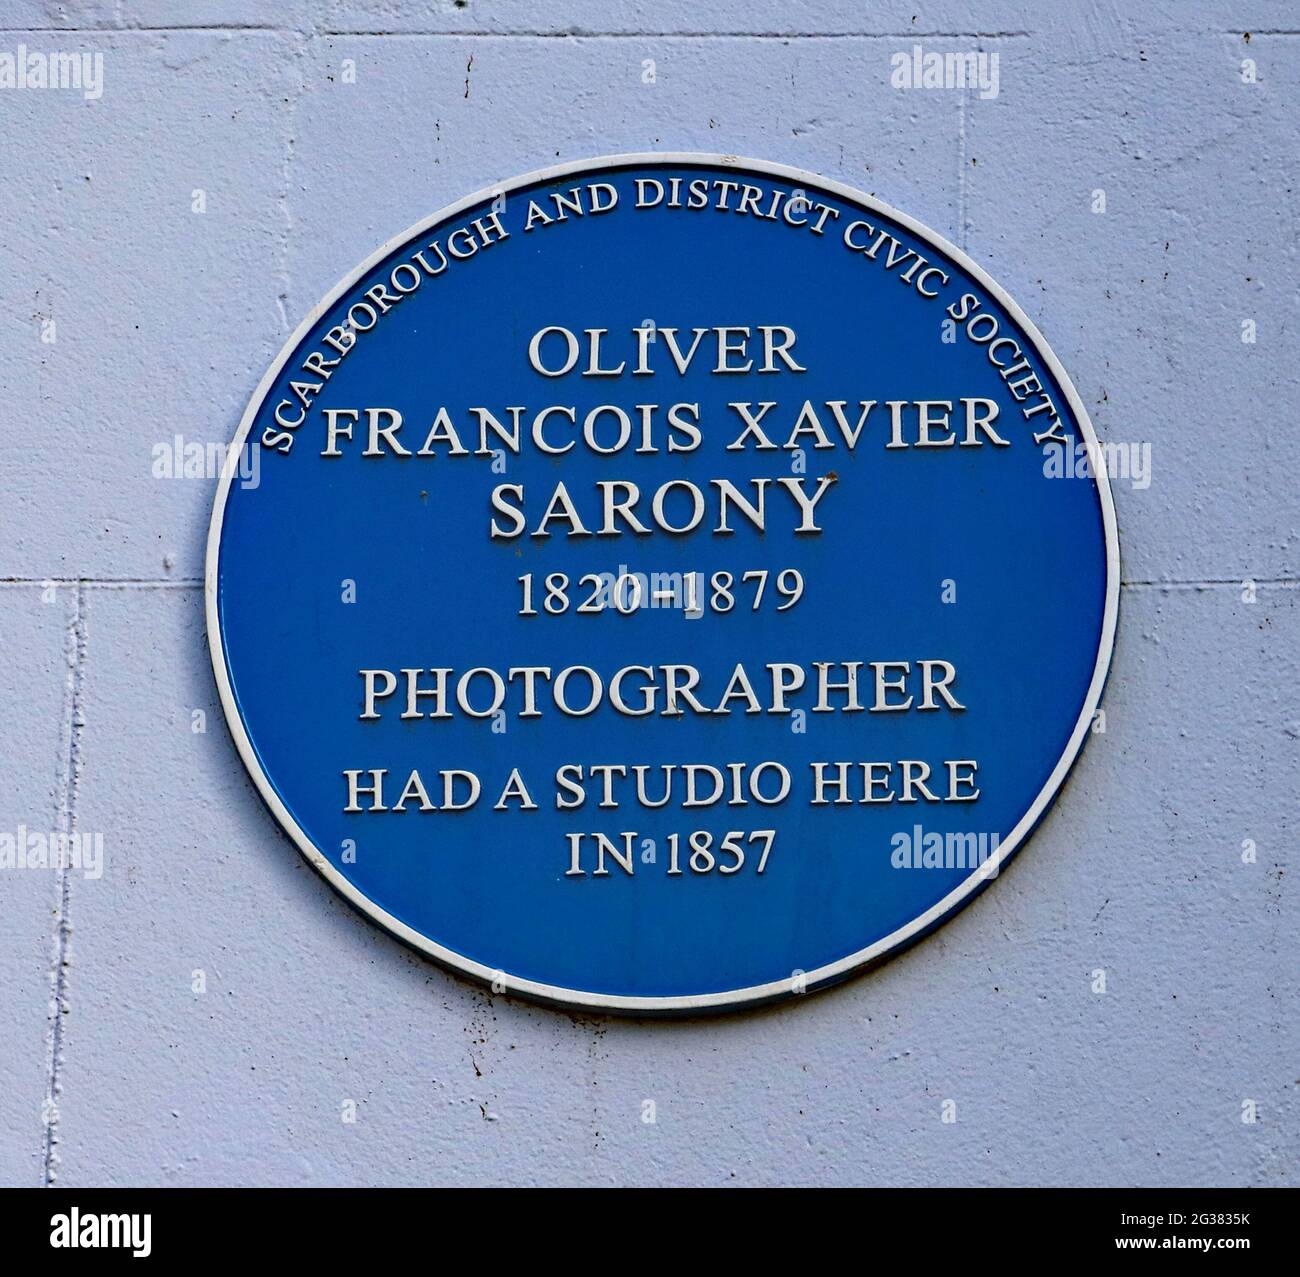 Blaue Plakette für Oliver Francois Xavier Sarony am Fairview Court Scarborough, aufgenommen, wo der Fotograf in den 1800er Jahren ein Studio hatte. Stockfoto